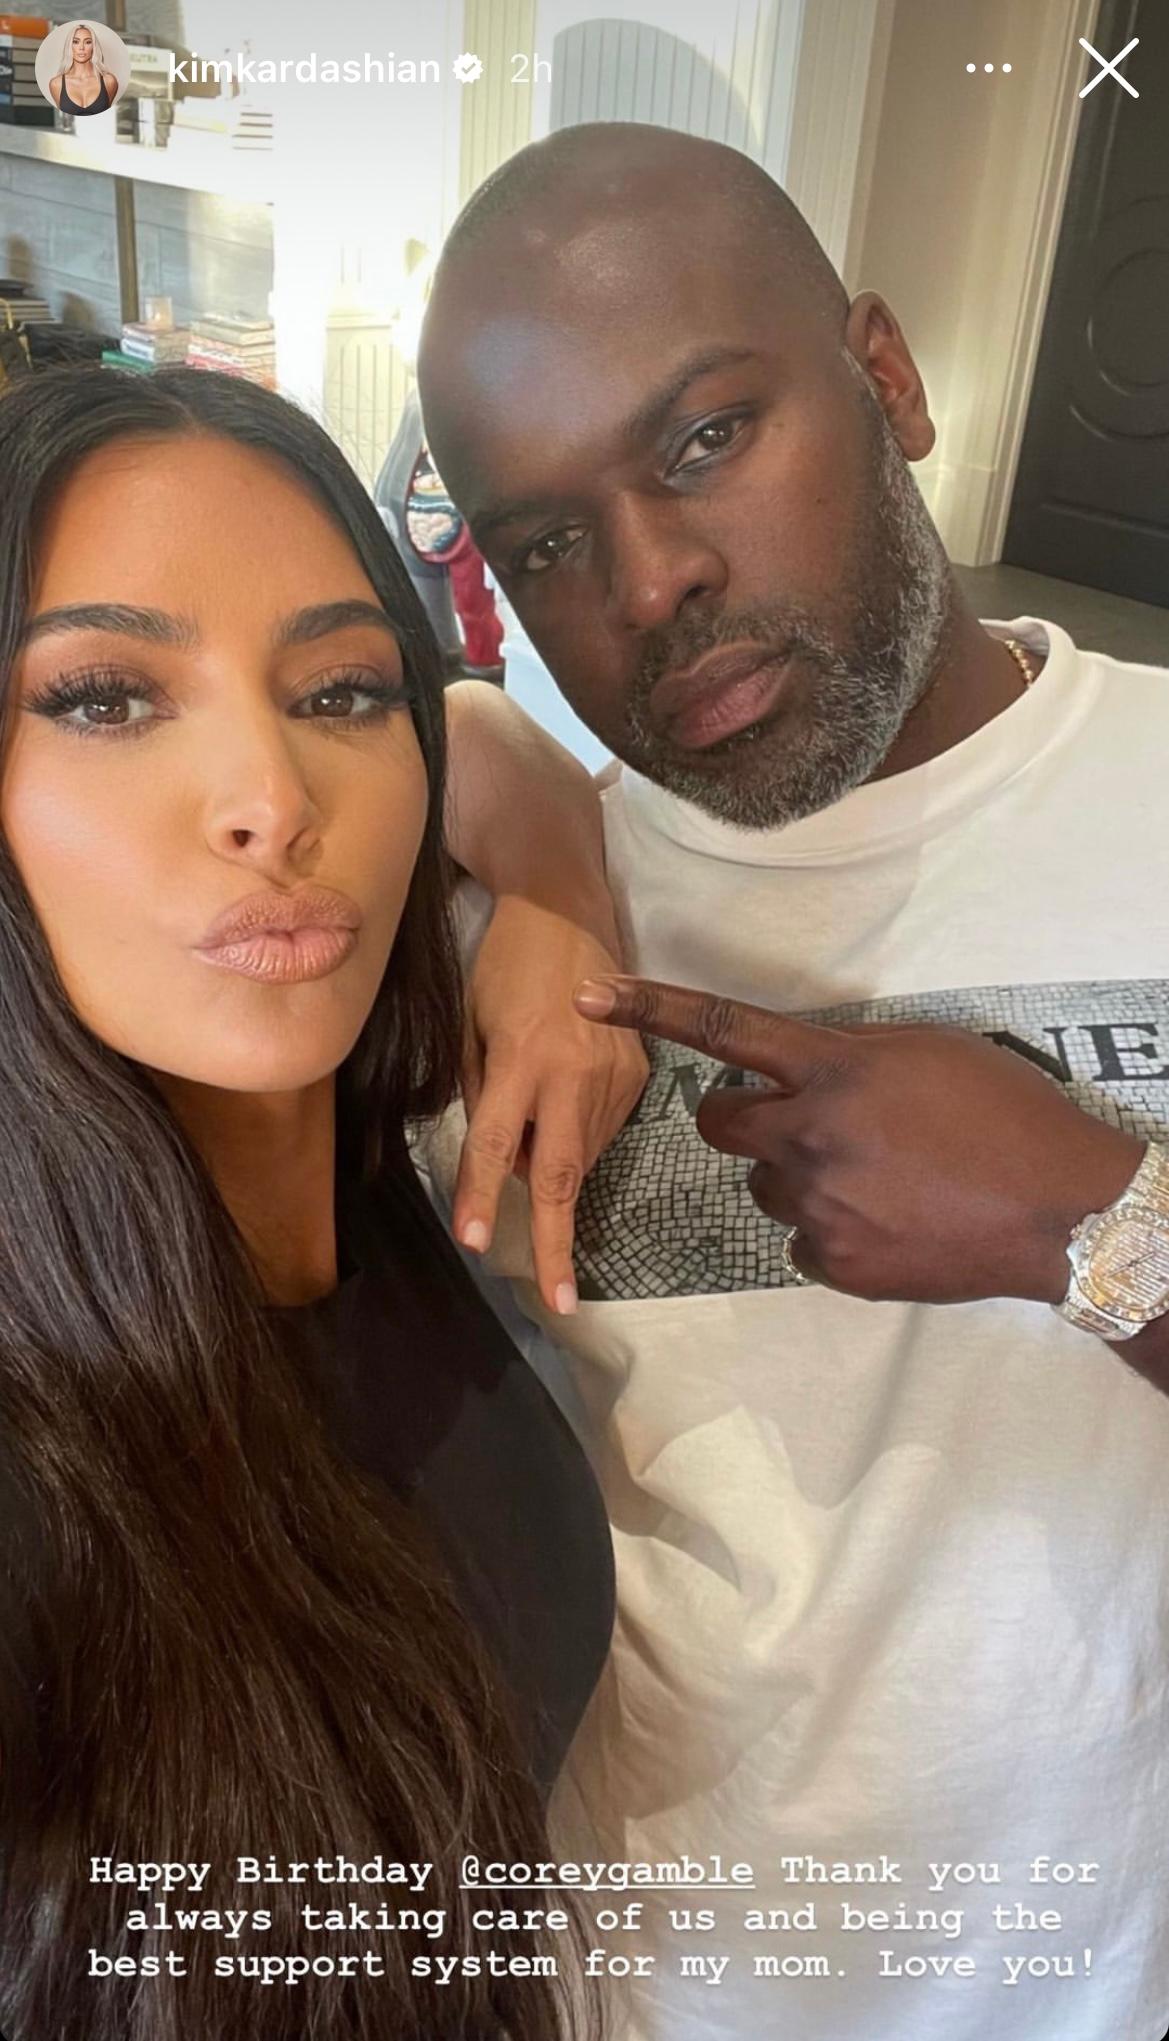 Kim Kardashian's tribute to Corey Gamble on his birthday